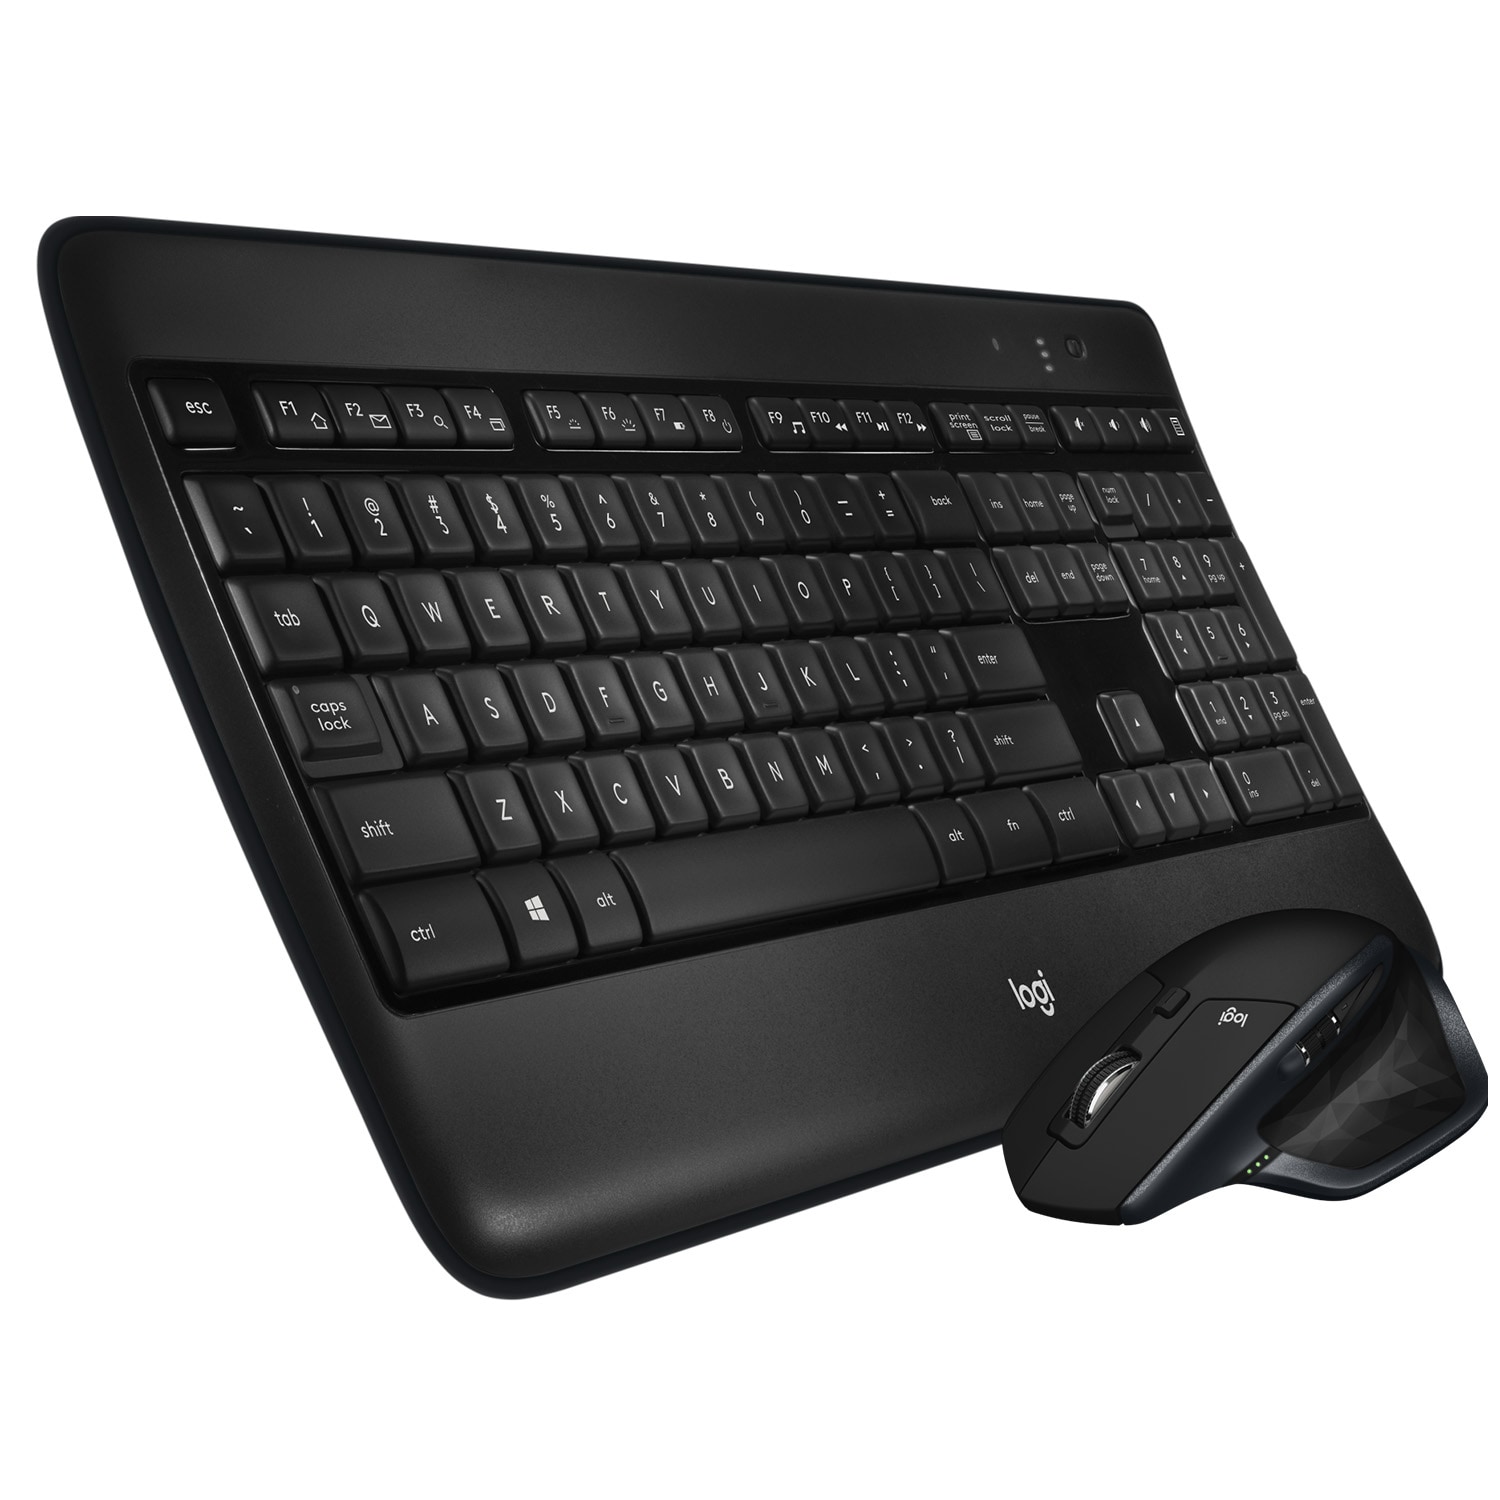 Logitech MX900 Performance tastatur og mus | Elgiganten